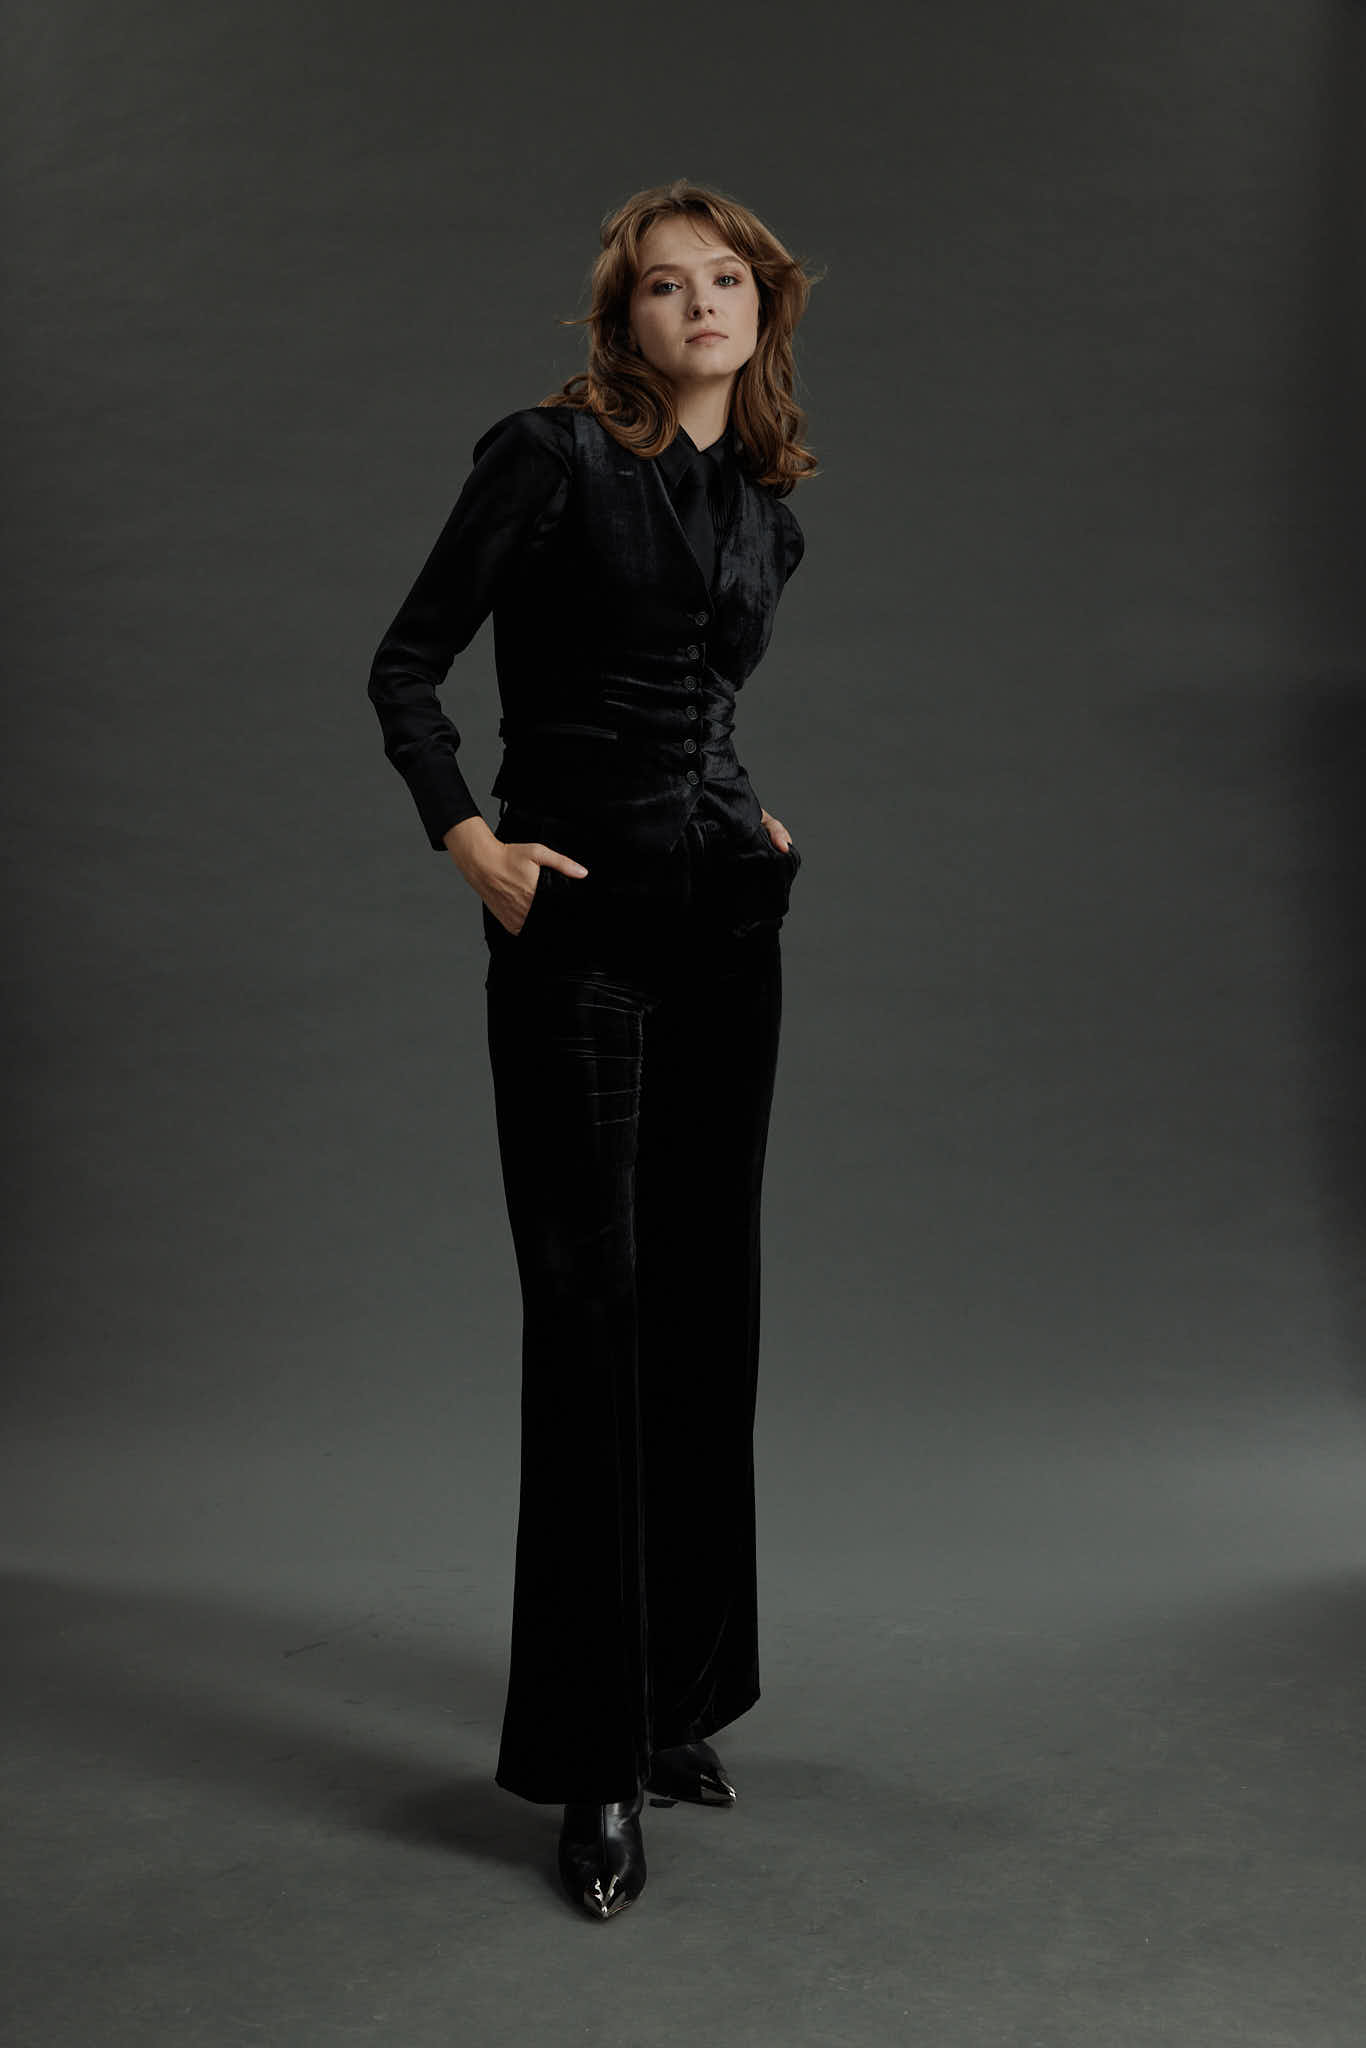 Maia – Limited Edition Waistcoat – Waistcoat in black velvet